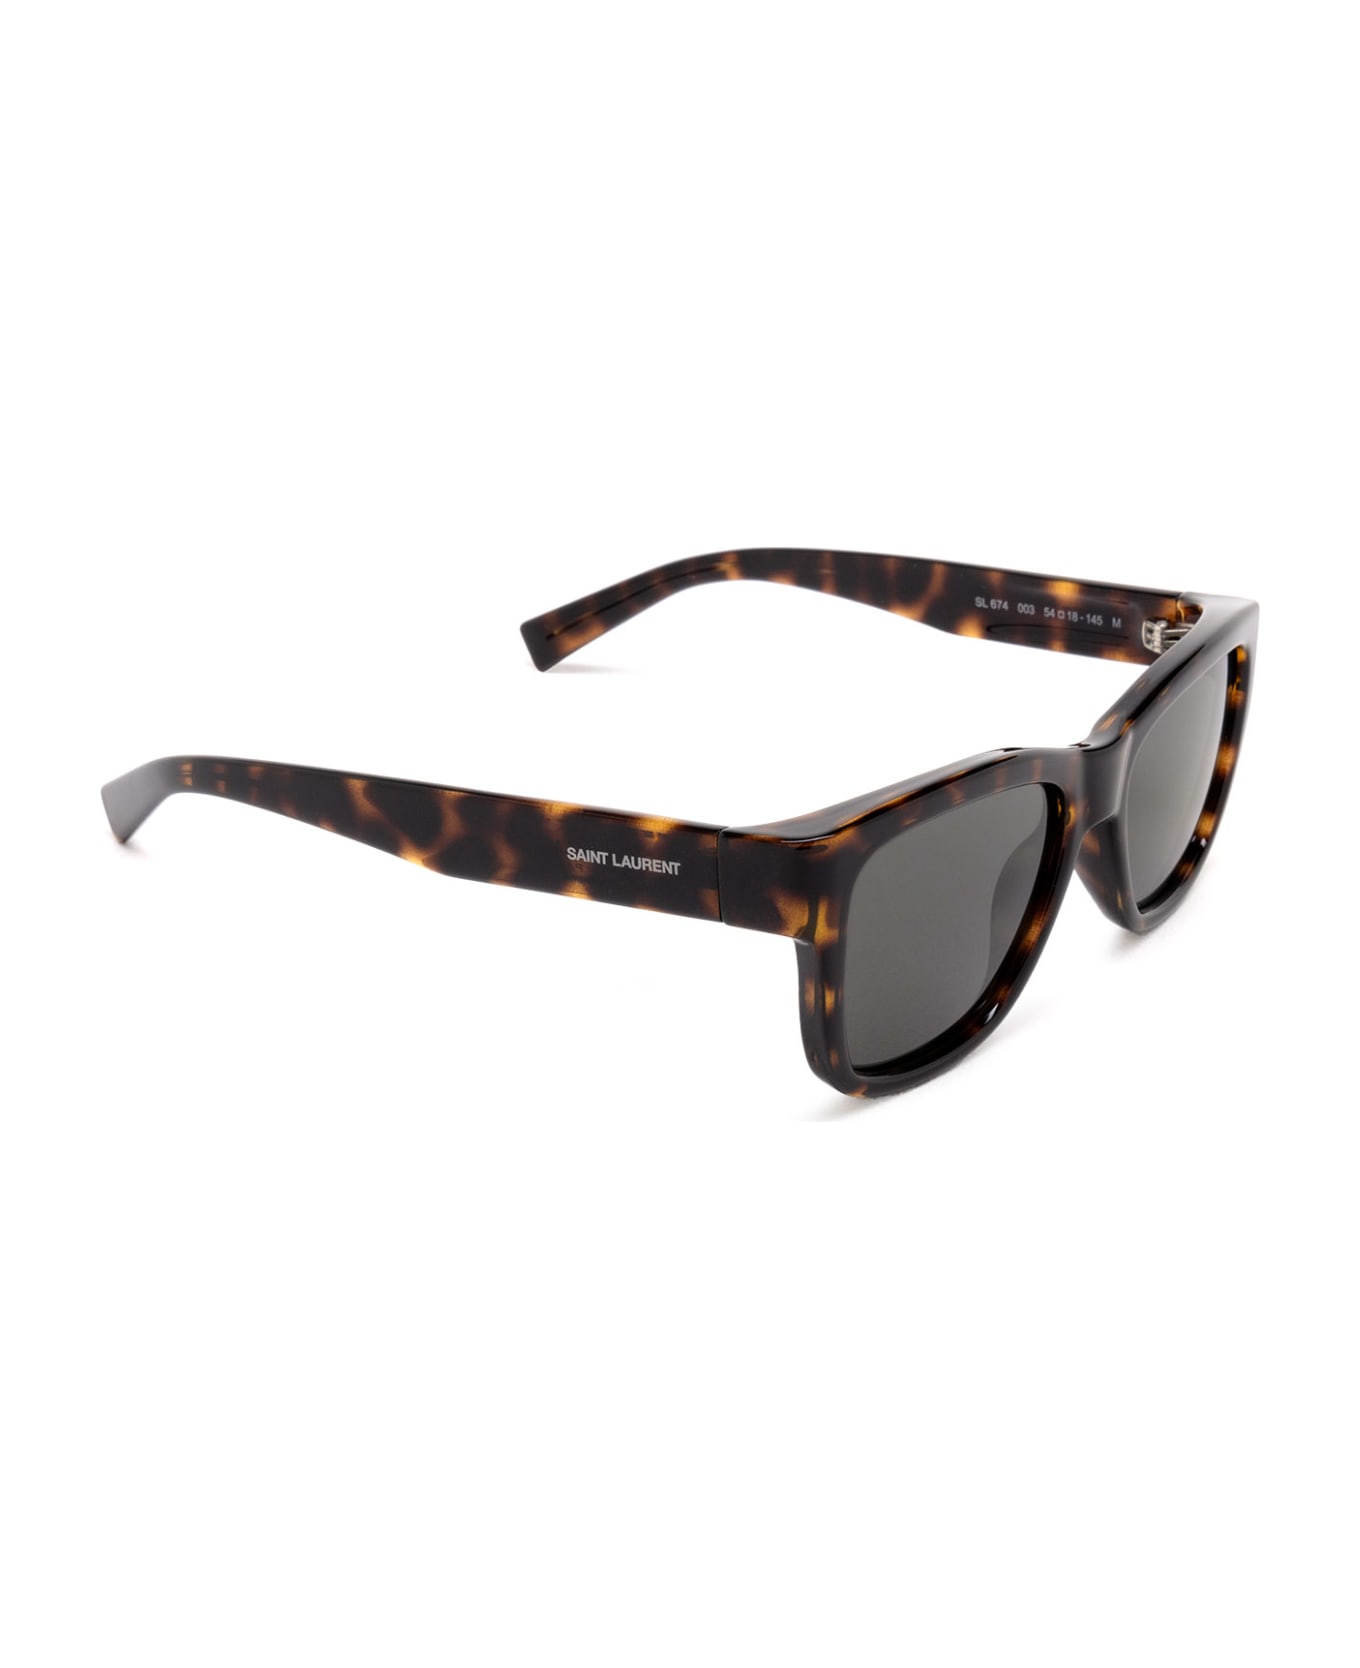 Saint Laurent Eyewear Sl 674 Havana Sunglasses - Havana